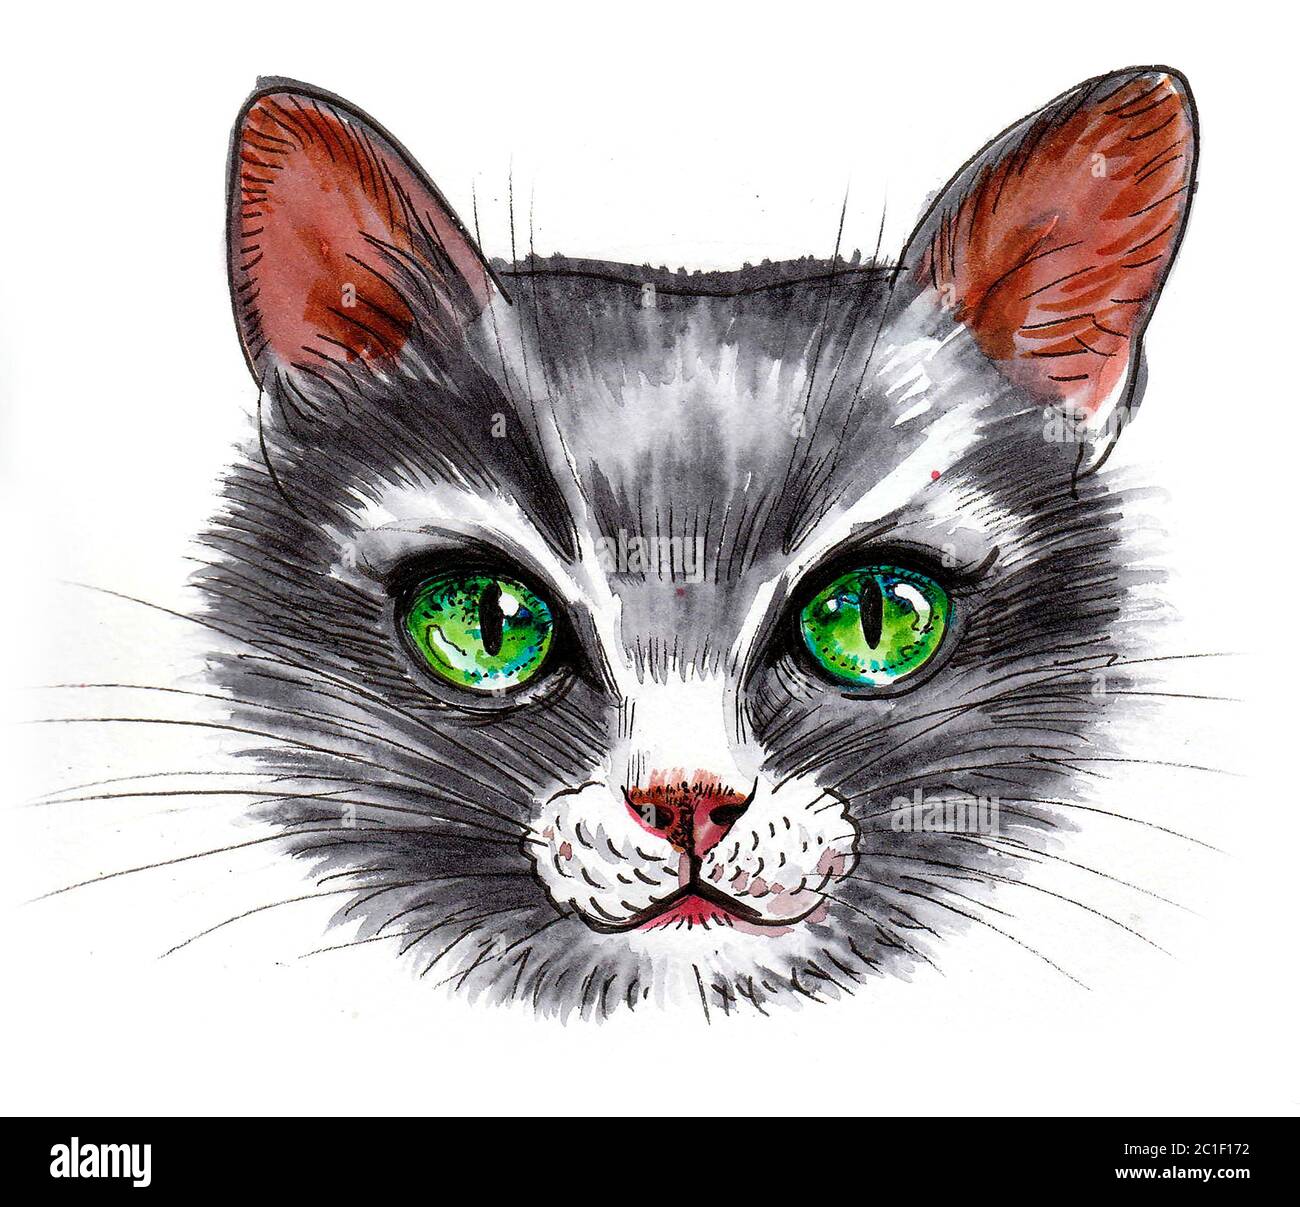 Nette Katze mit grünen Augen. Tusche und Aquarell Zeichnung Stockfoto